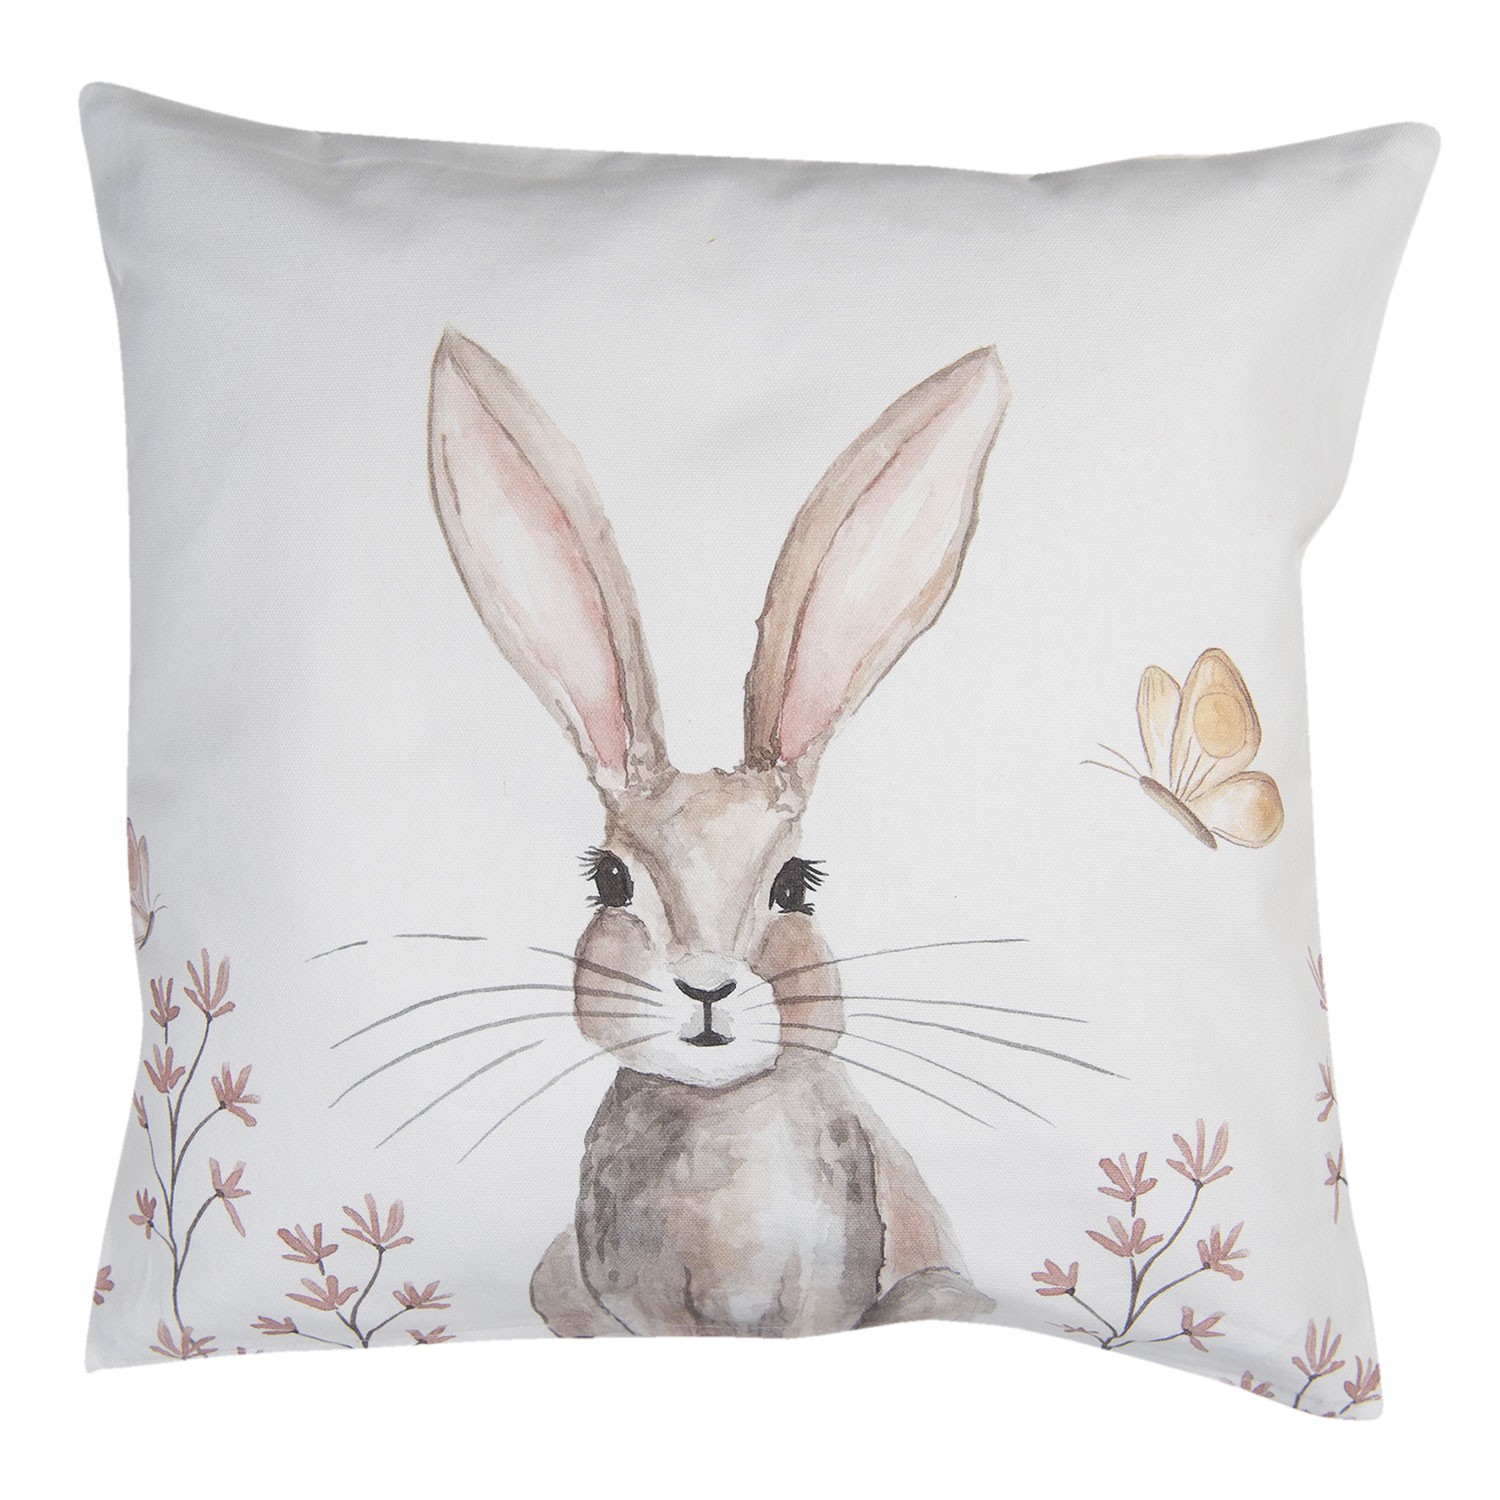 Povlak na polštář s velikonočním motivem králíka Rustic Easter Bunny - 40*40 cm Clayre & Eef